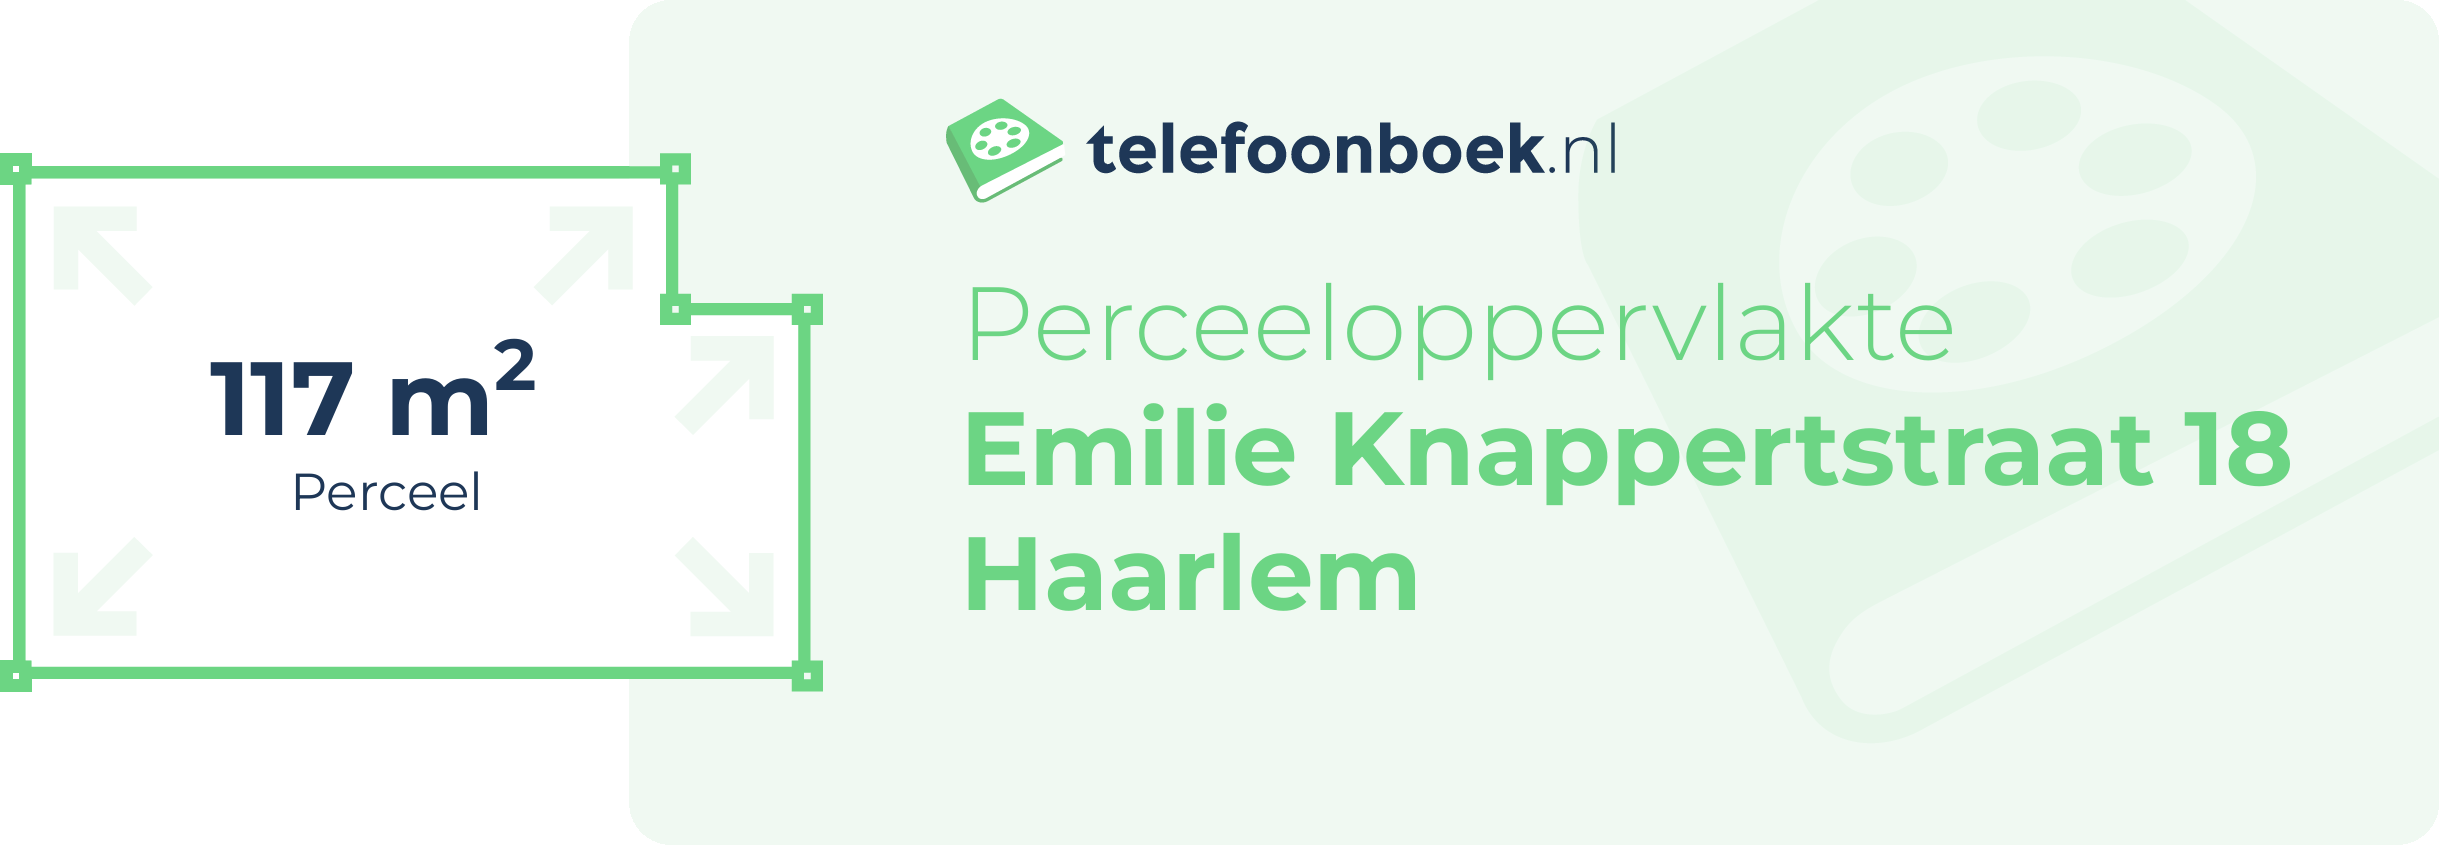 Perceeloppervlakte Emilie Knappertstraat 18 Haarlem